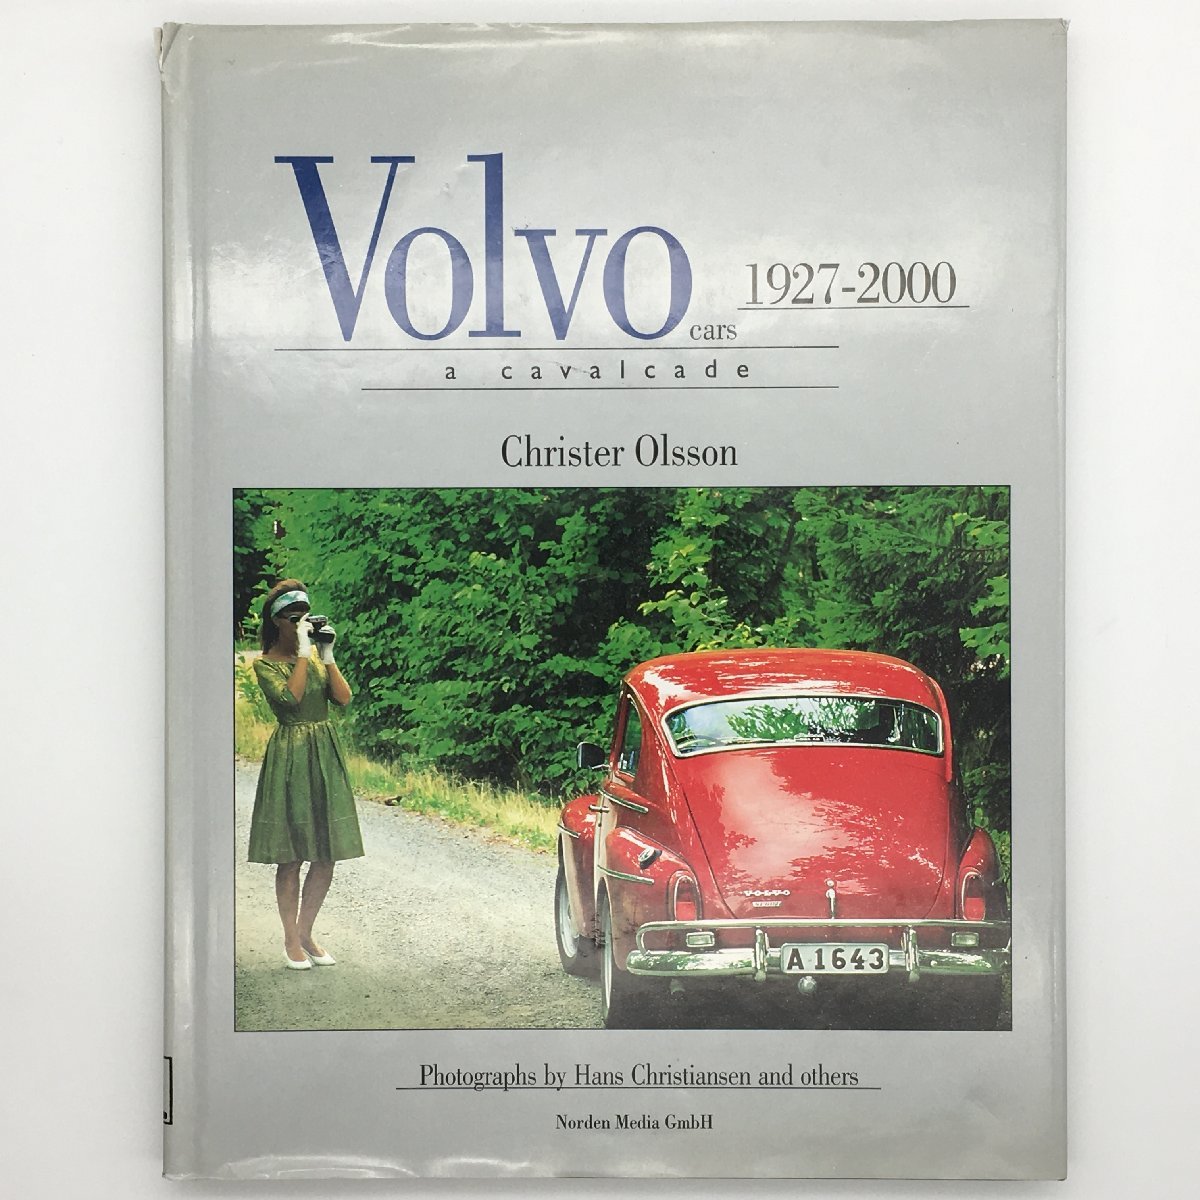 VOLVO CARS: A CAVALCADE 1927-2000 Christer Olsson ボルボ